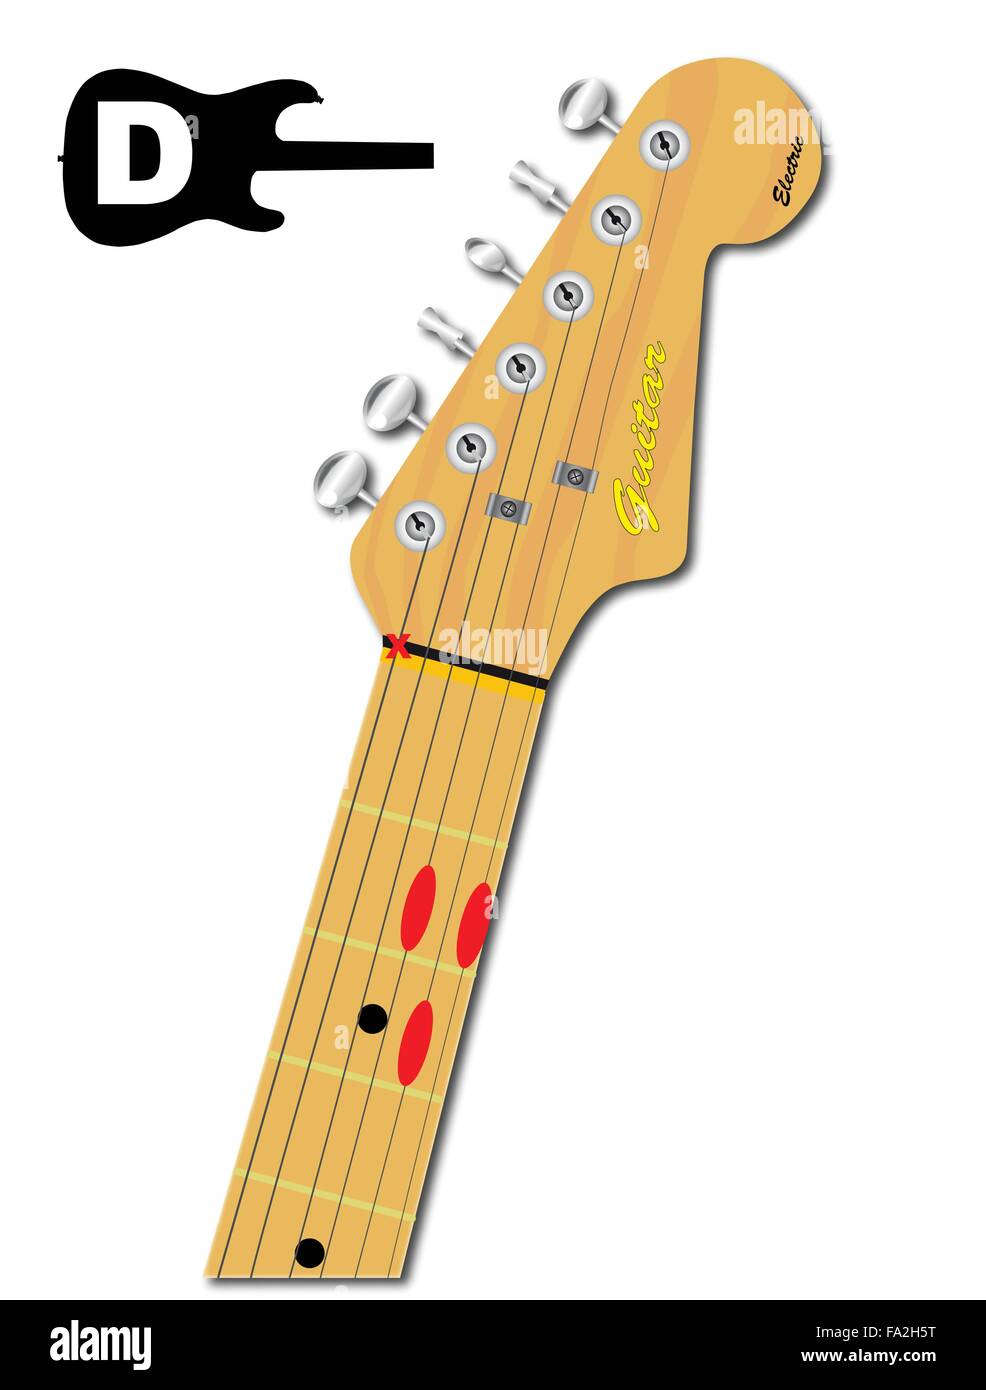 Une guitare électrique cou avec l'accord de Ré majeur de la forme indiquée  avec boutons rouges Image Vectorielle Stock - Alamy